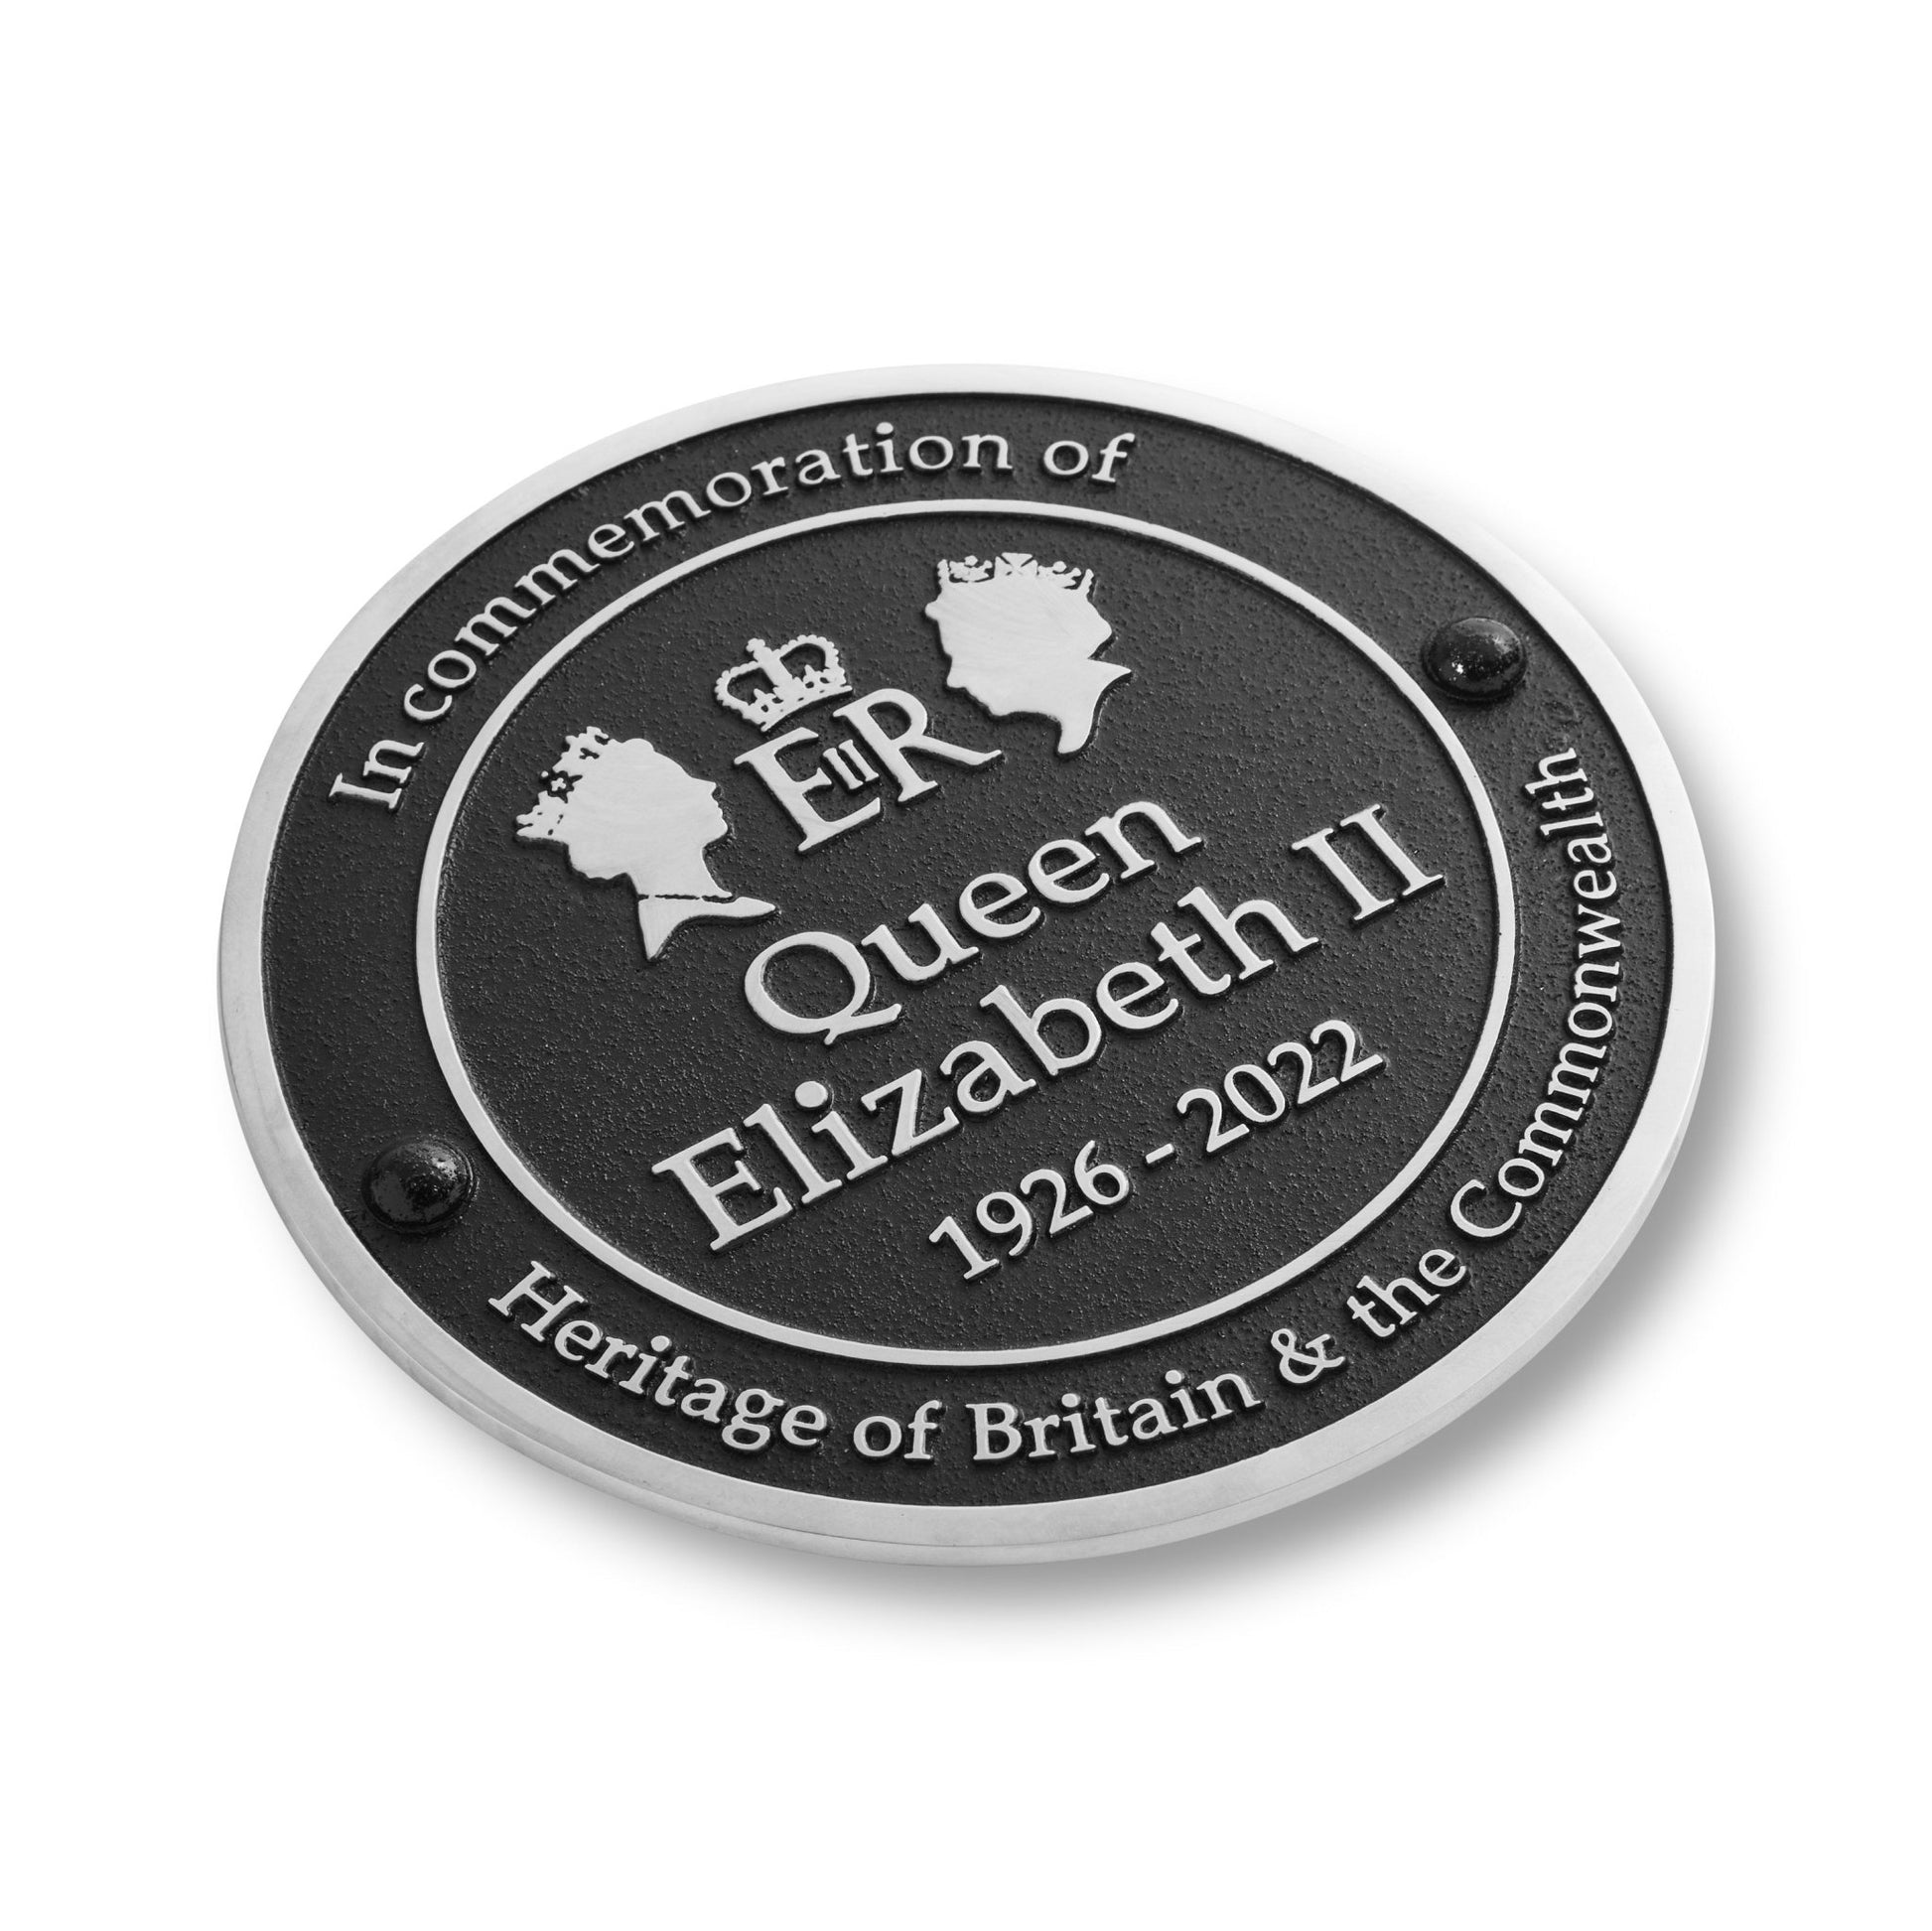 Queen Elizabeth II - Commemorative Plaque - The Metal Foundry